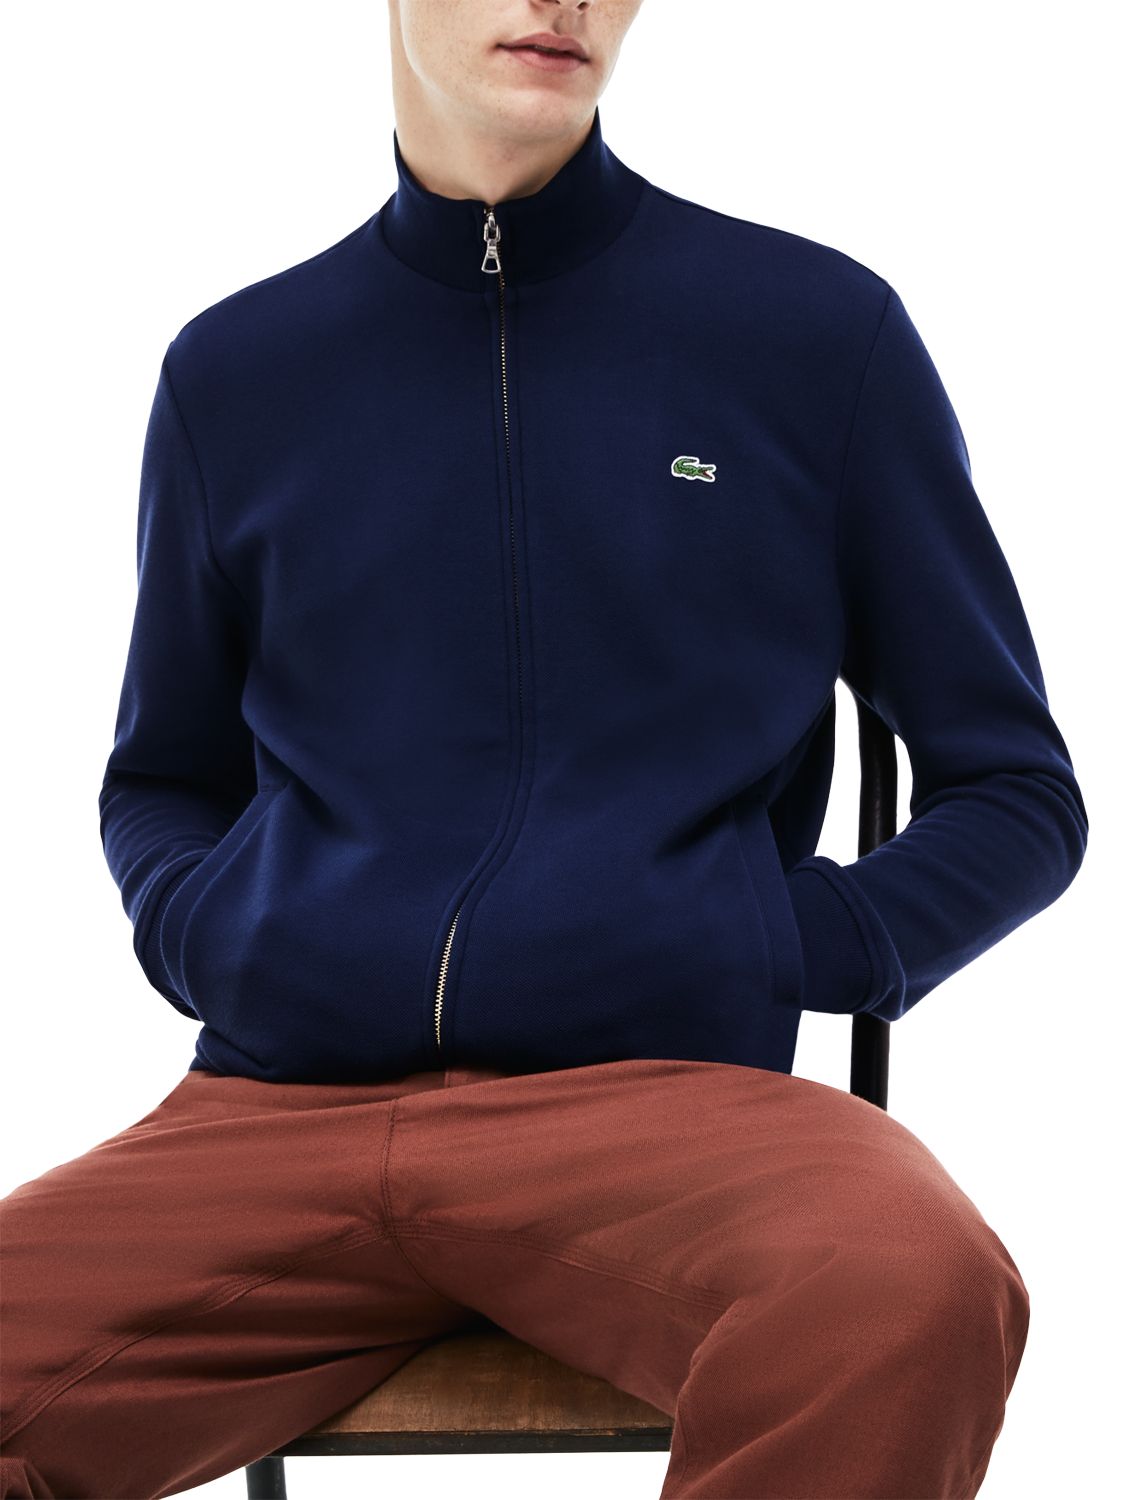 Lacoste Classic Zip Through Sweatshirt, Navy, L